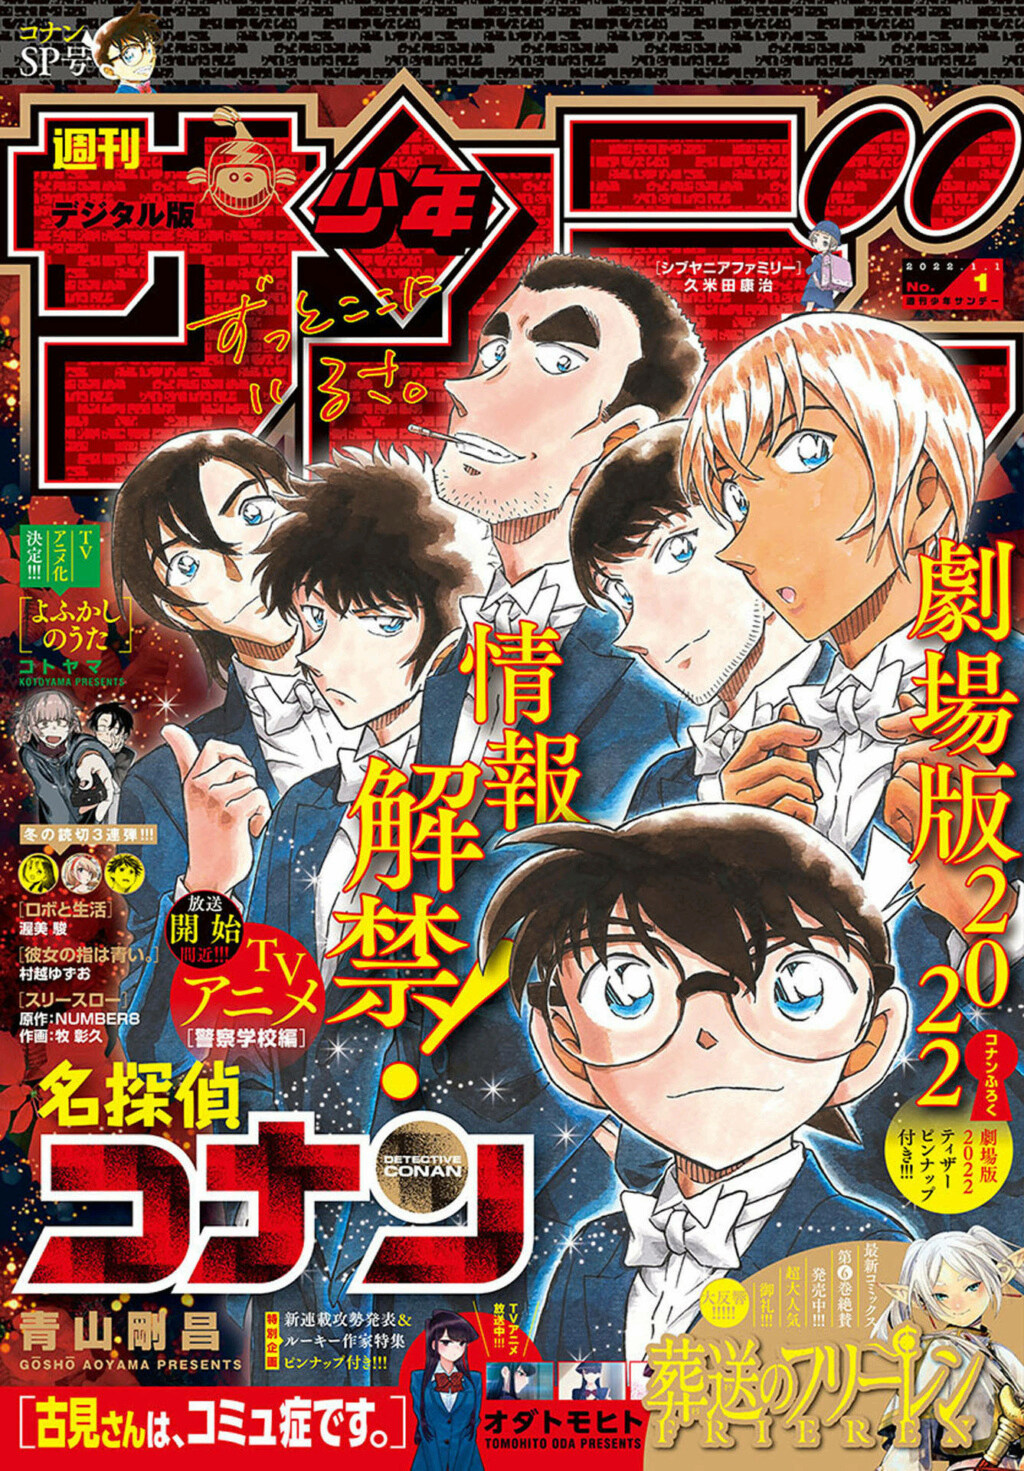 Les couvertures "Détective Conan" et "Magic Kaito" du Weekly Shōnen Sunday et du Shōnen Sunday Super - Page 2 00118